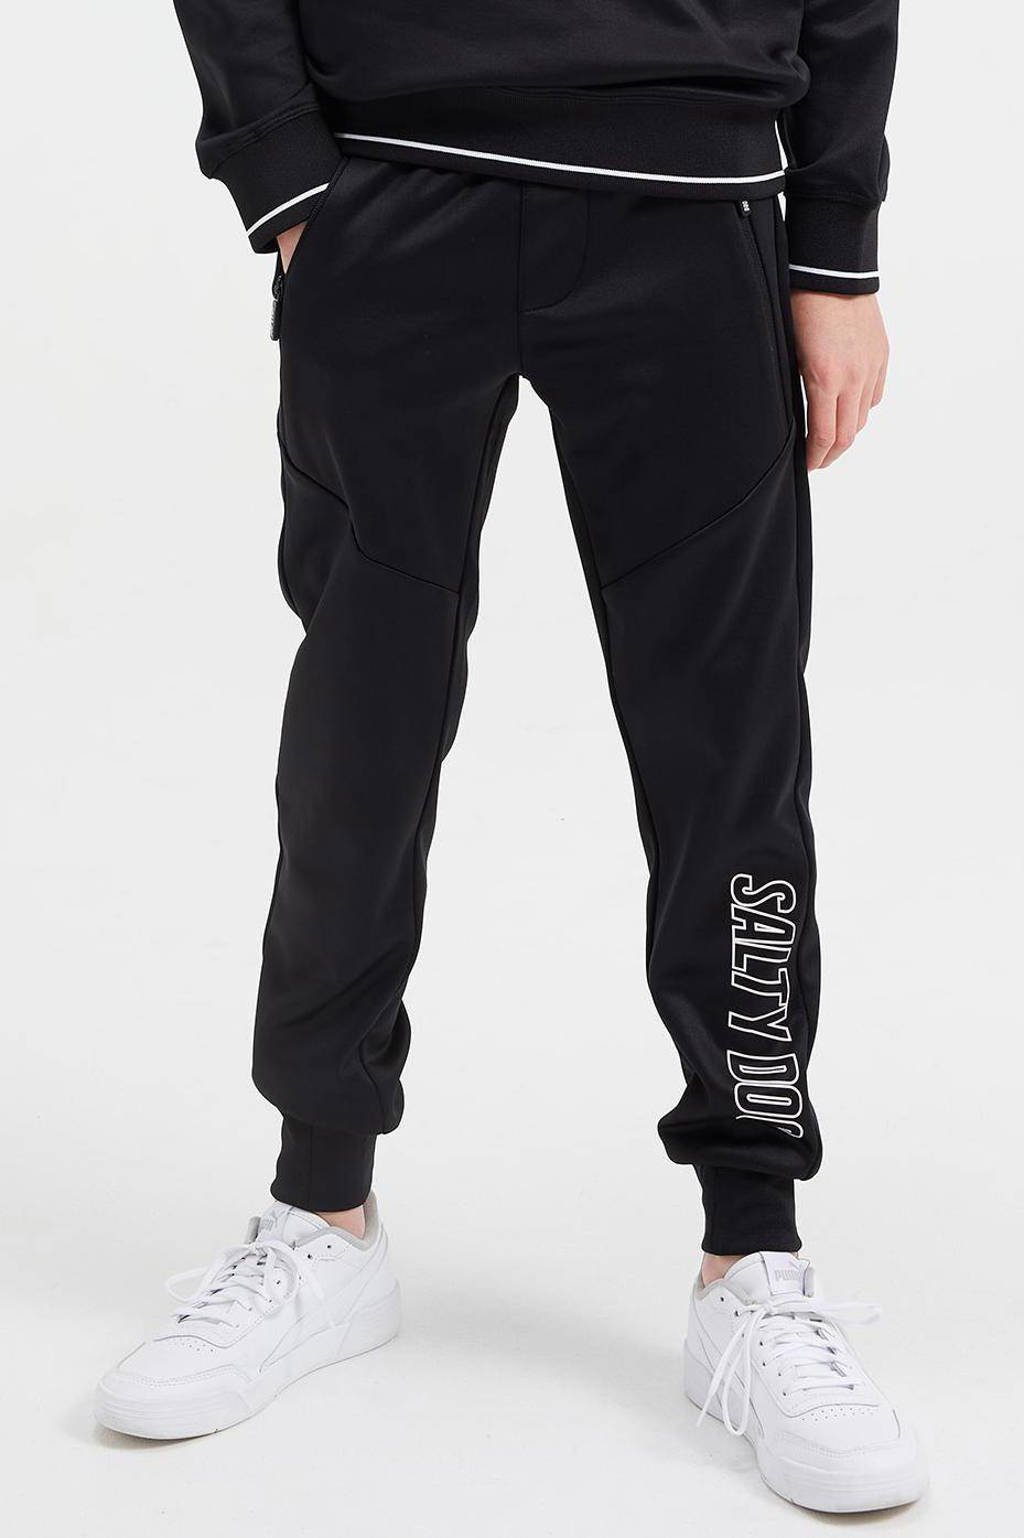 Zwarte jongens WE Fashion Salty Dog joggingbroek van polyester met regular waist, elastische tailleband met koord en tekst print